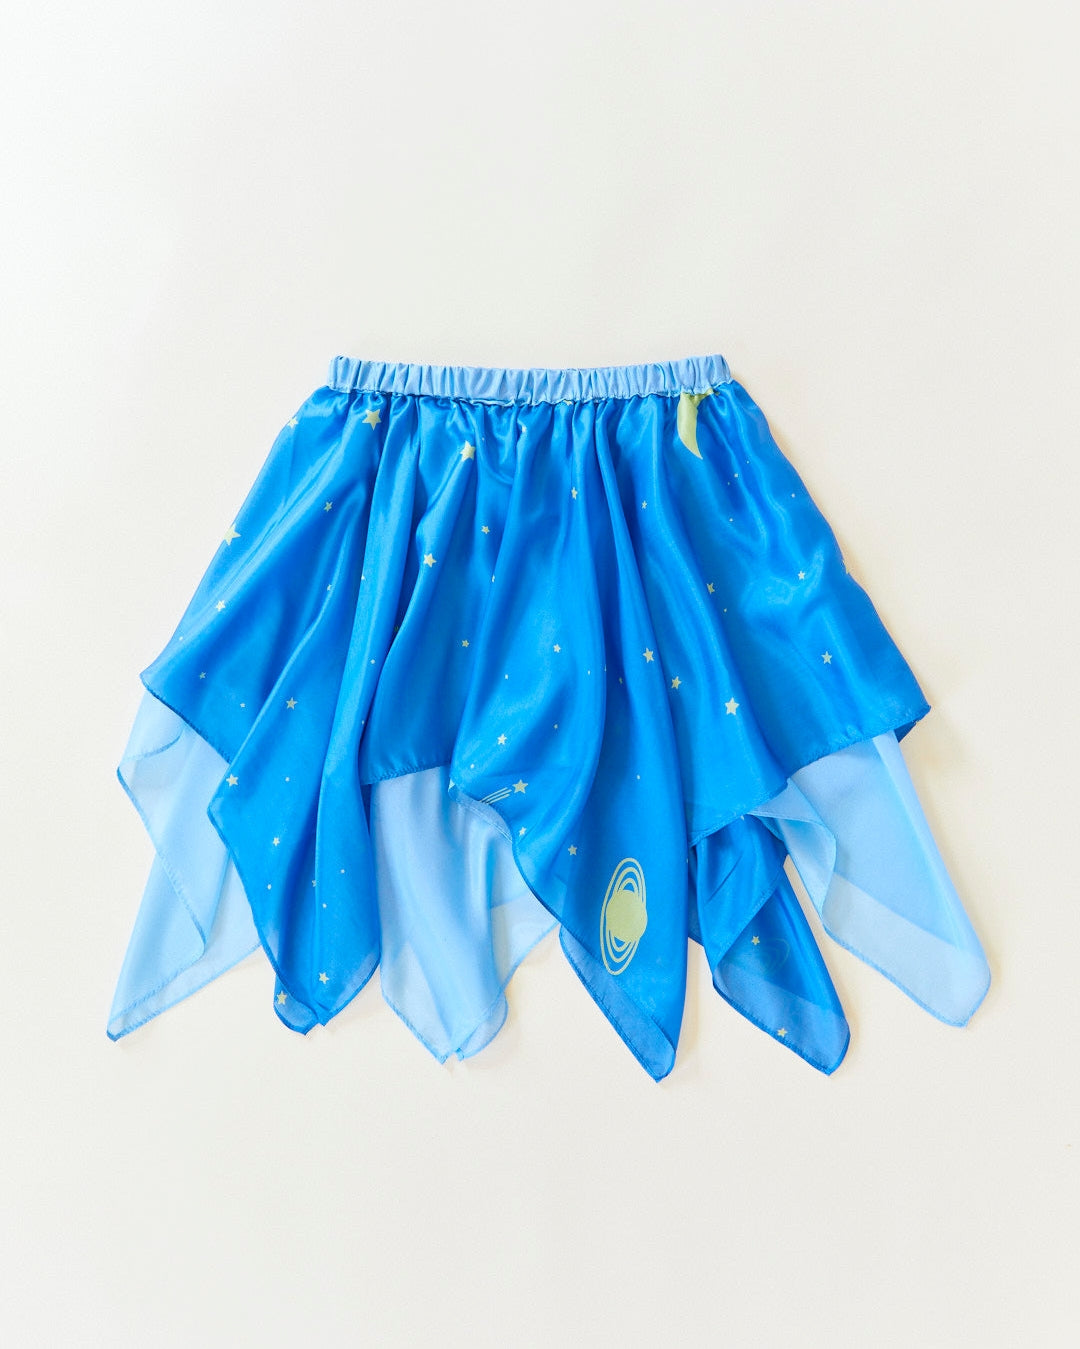 Star Fairy Skirt - 100% Silk Dress-Up For Pretend Play